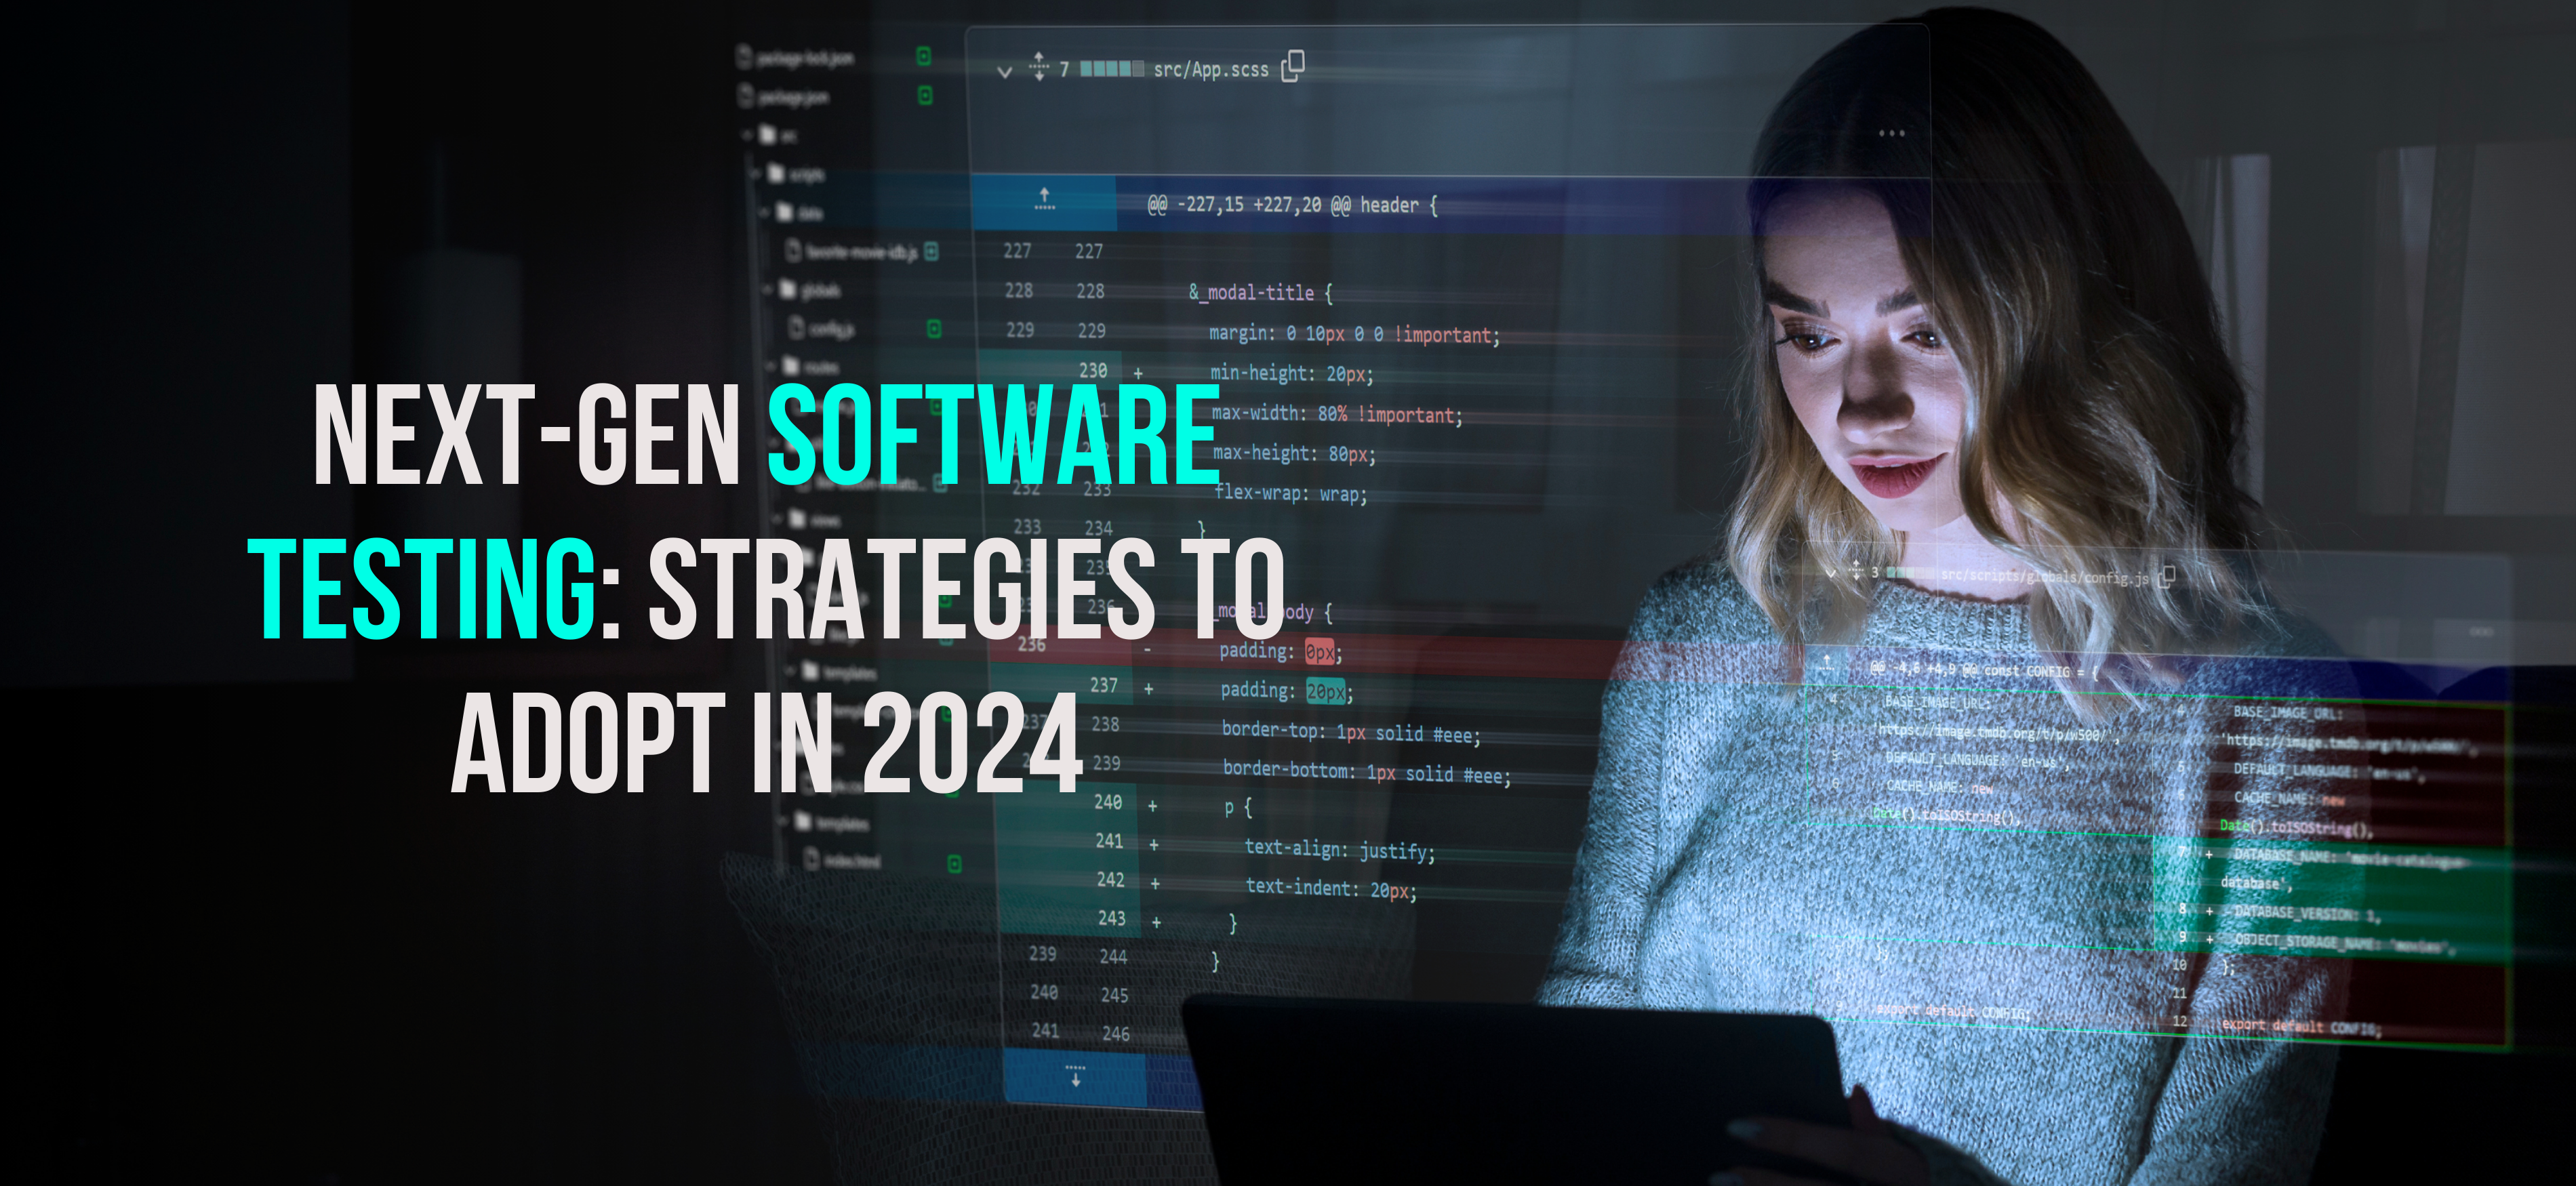 Next-Gen Software Testing: Strategies to Adopt in 2024 - Internet Soft